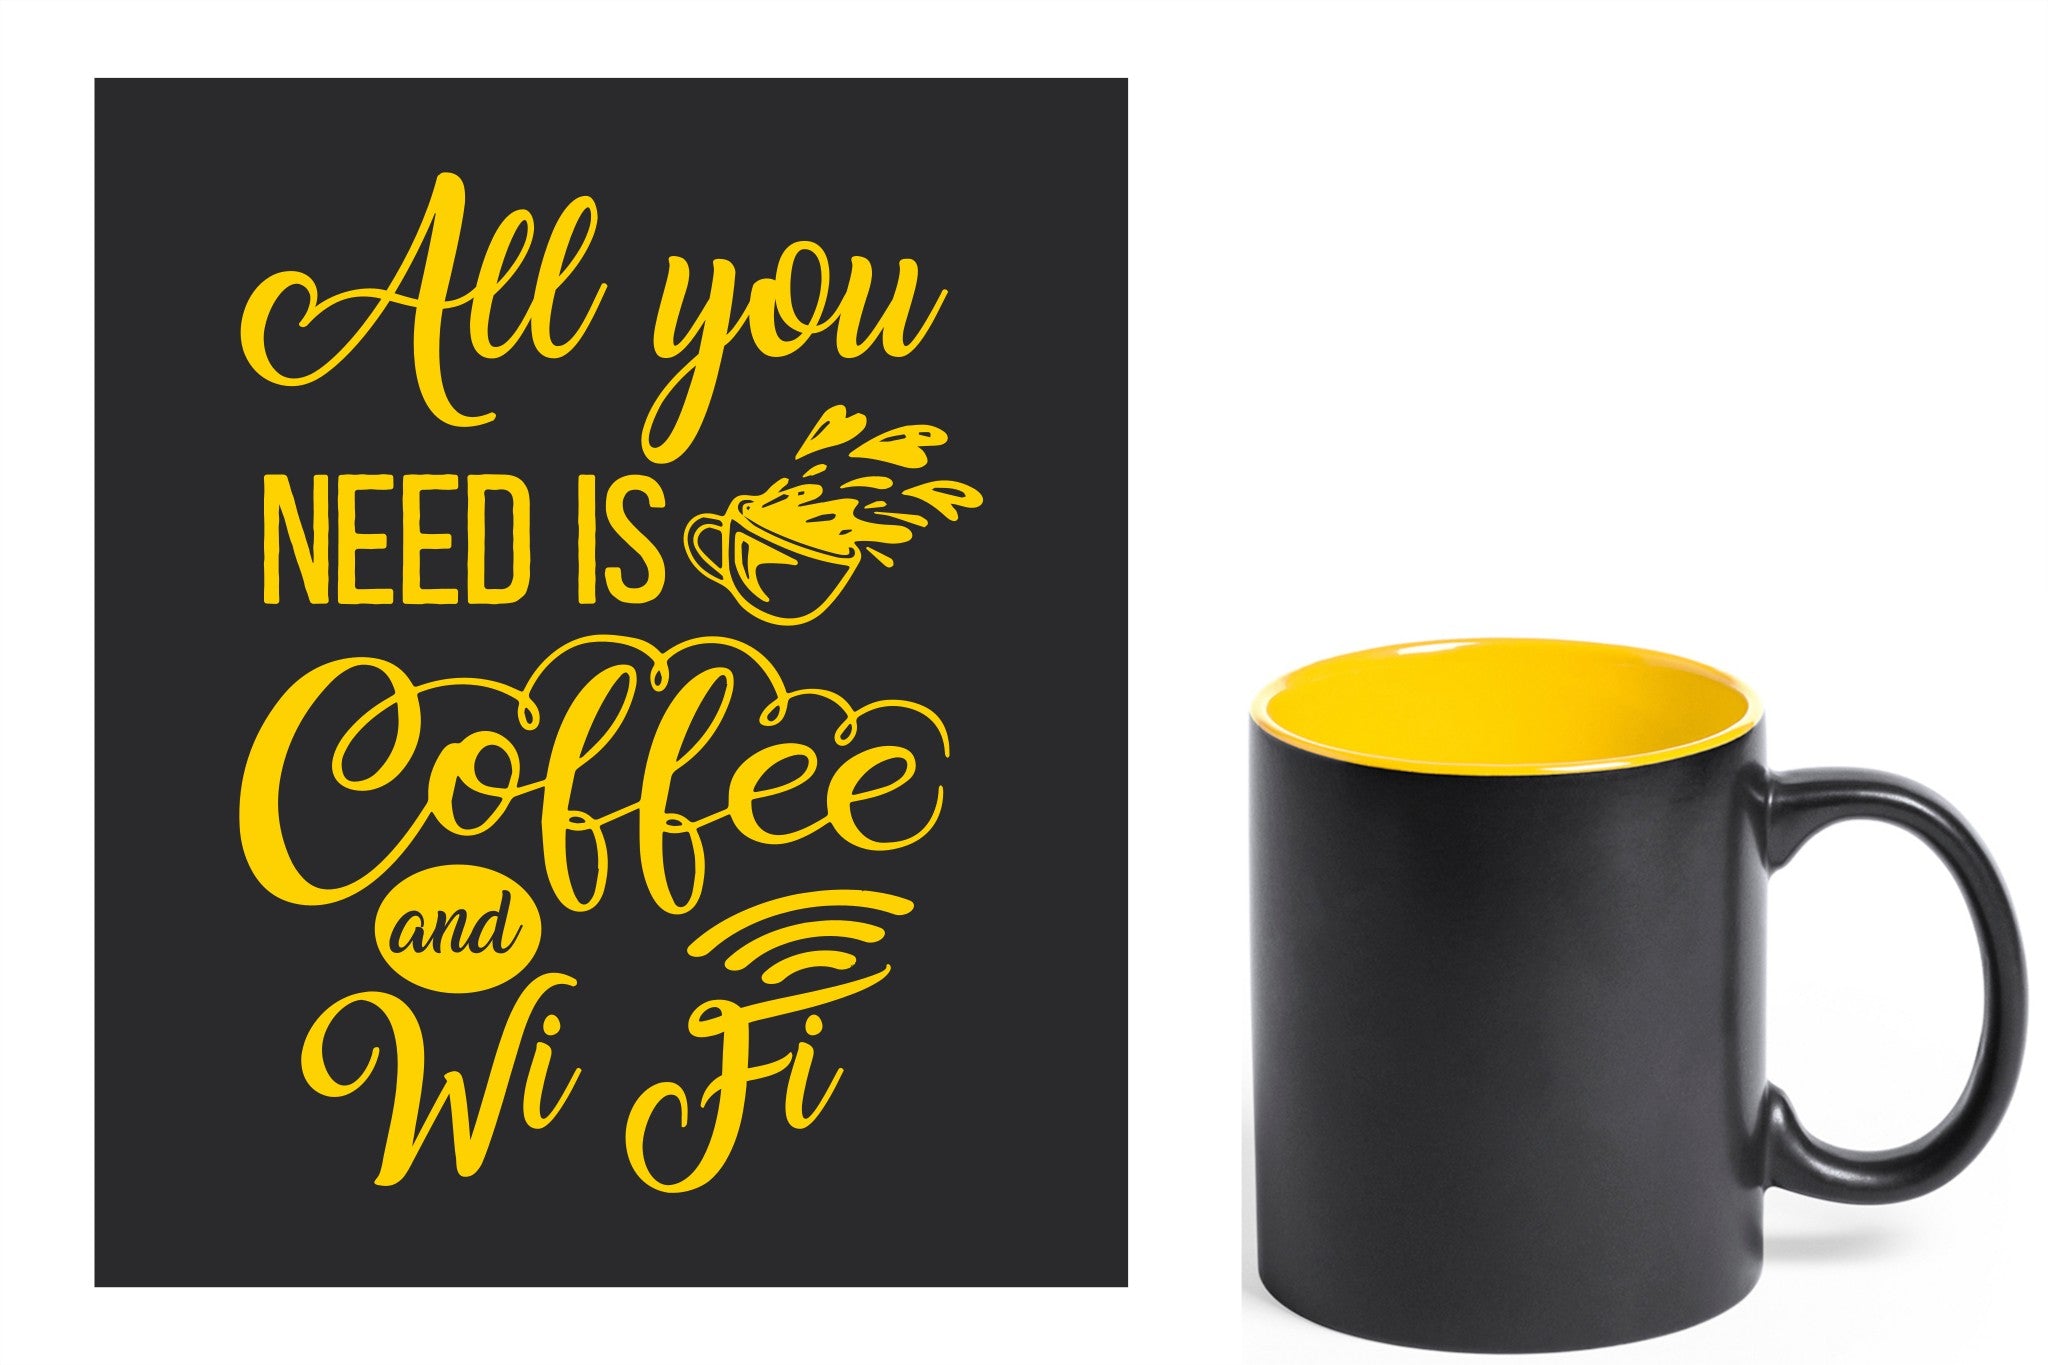 zwarte keramische mok met gele gravure  'All you need is coffee and wifi'.